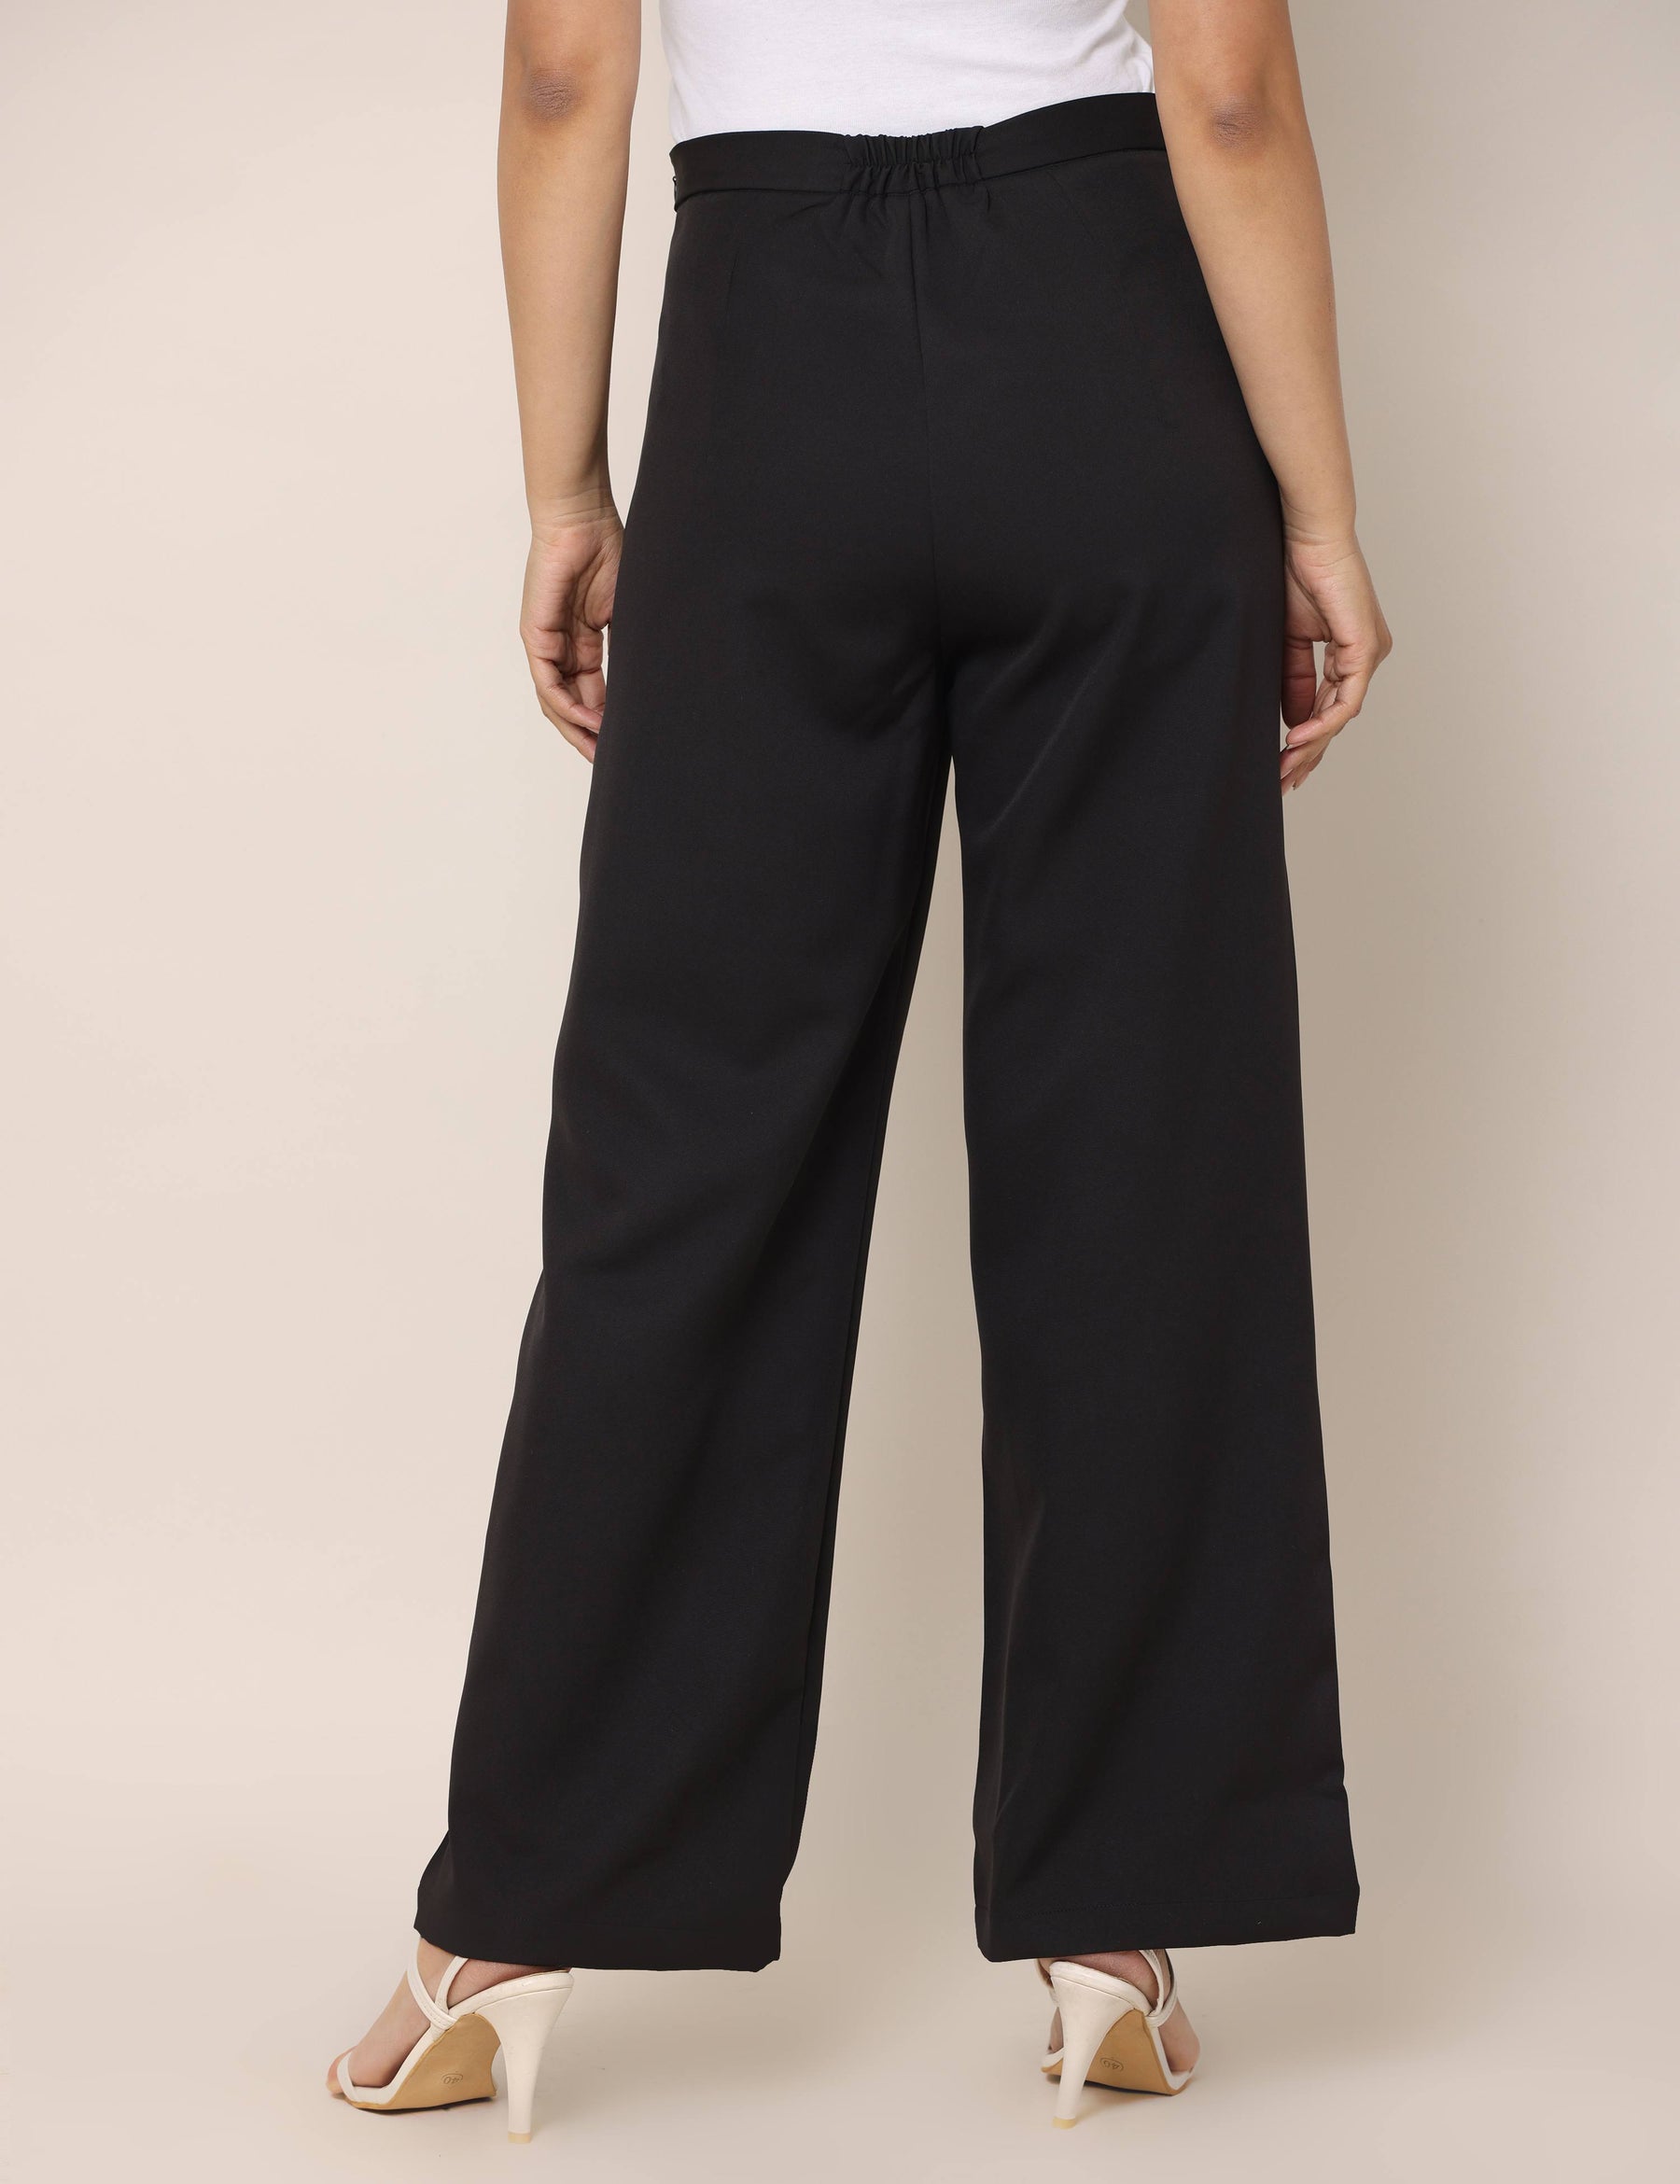 Buy 4 Way Stretch Highwaist trousersBlack Online  Urban Poche